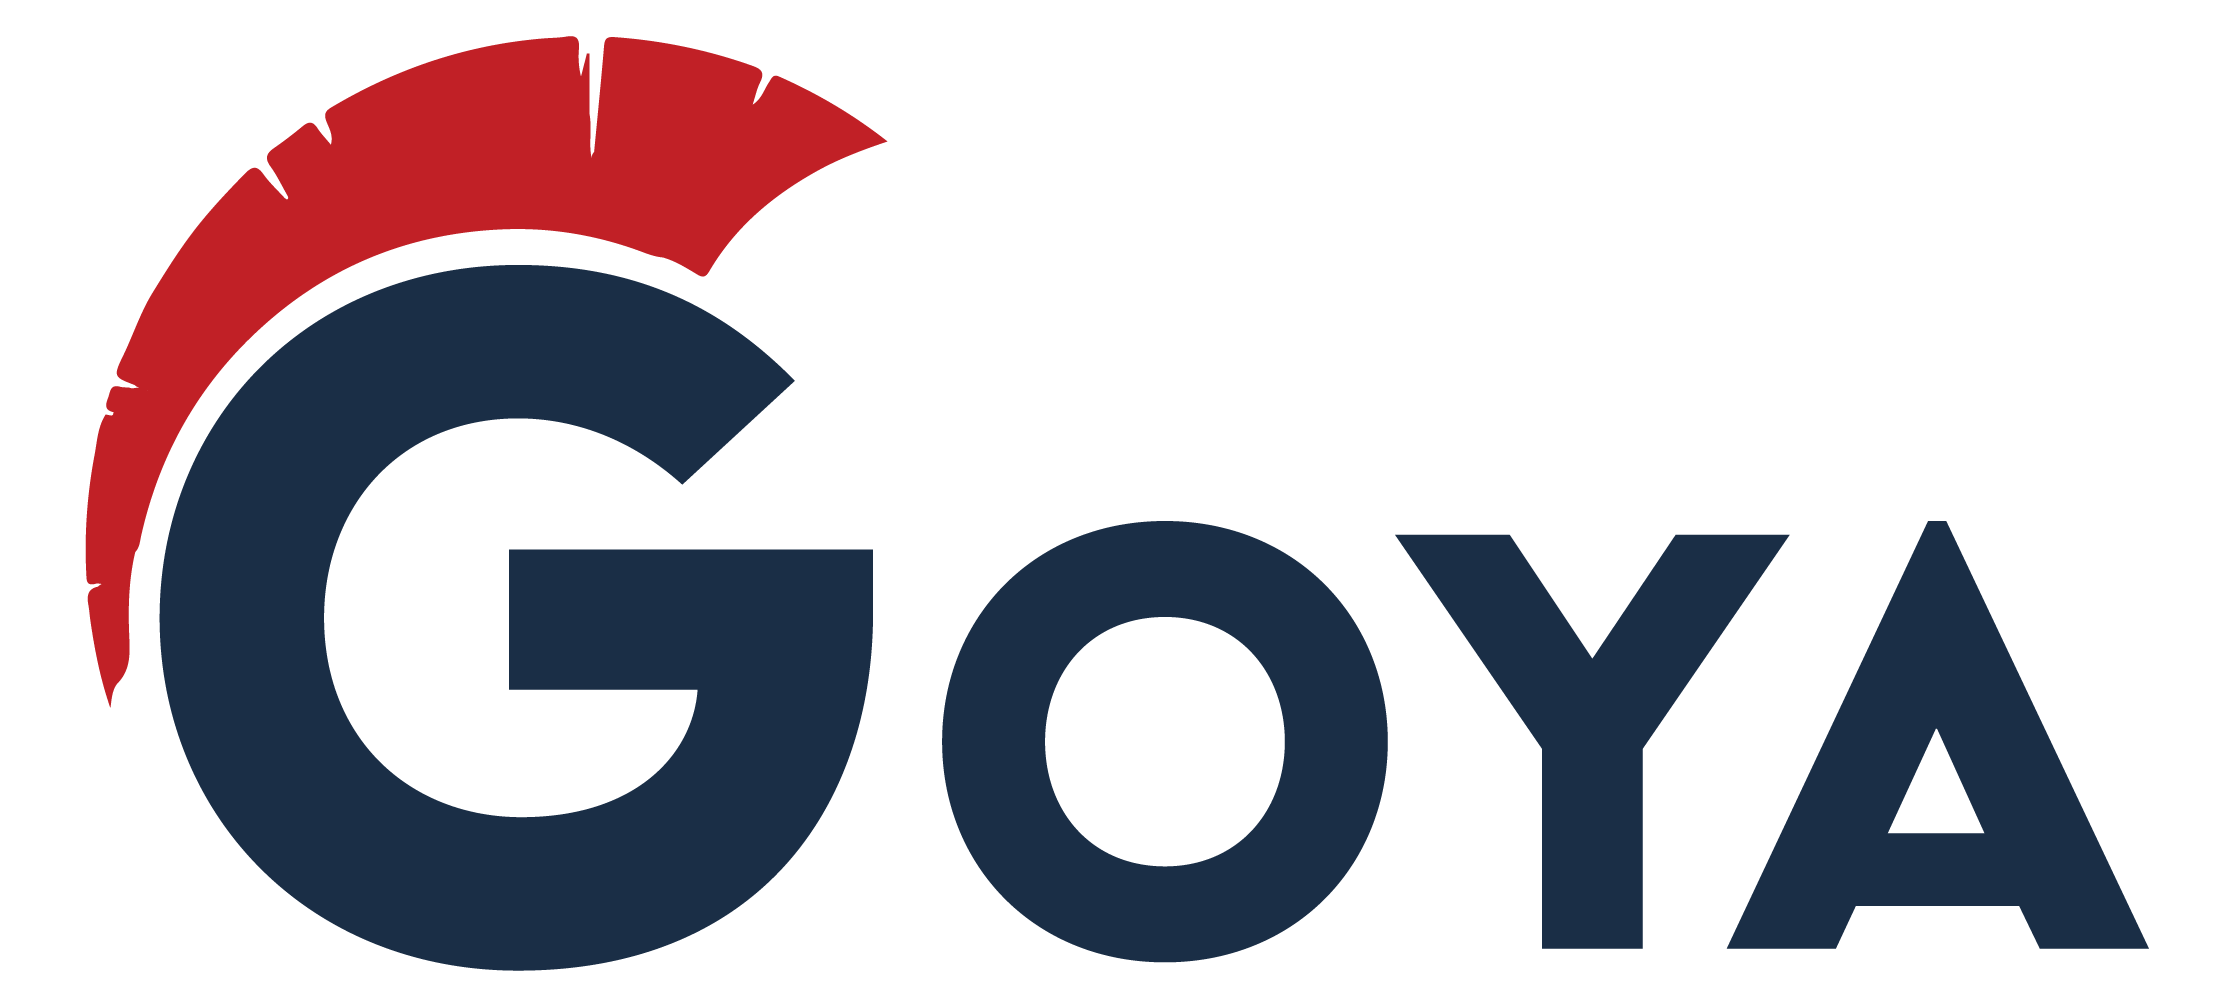 The Goya Group